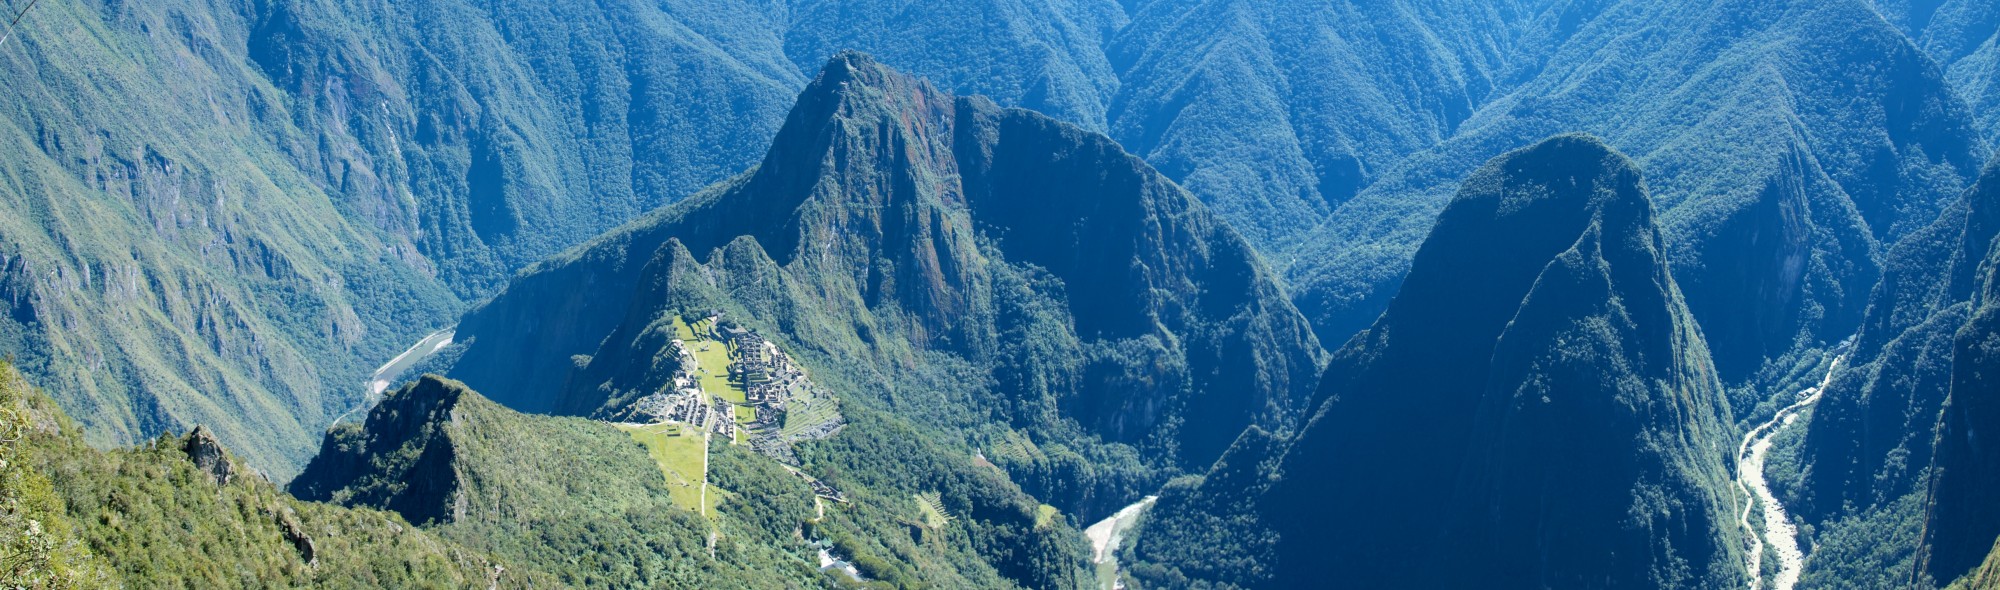 Peru - Machu Picchu 038 - lush, rugged valley (7367125008)